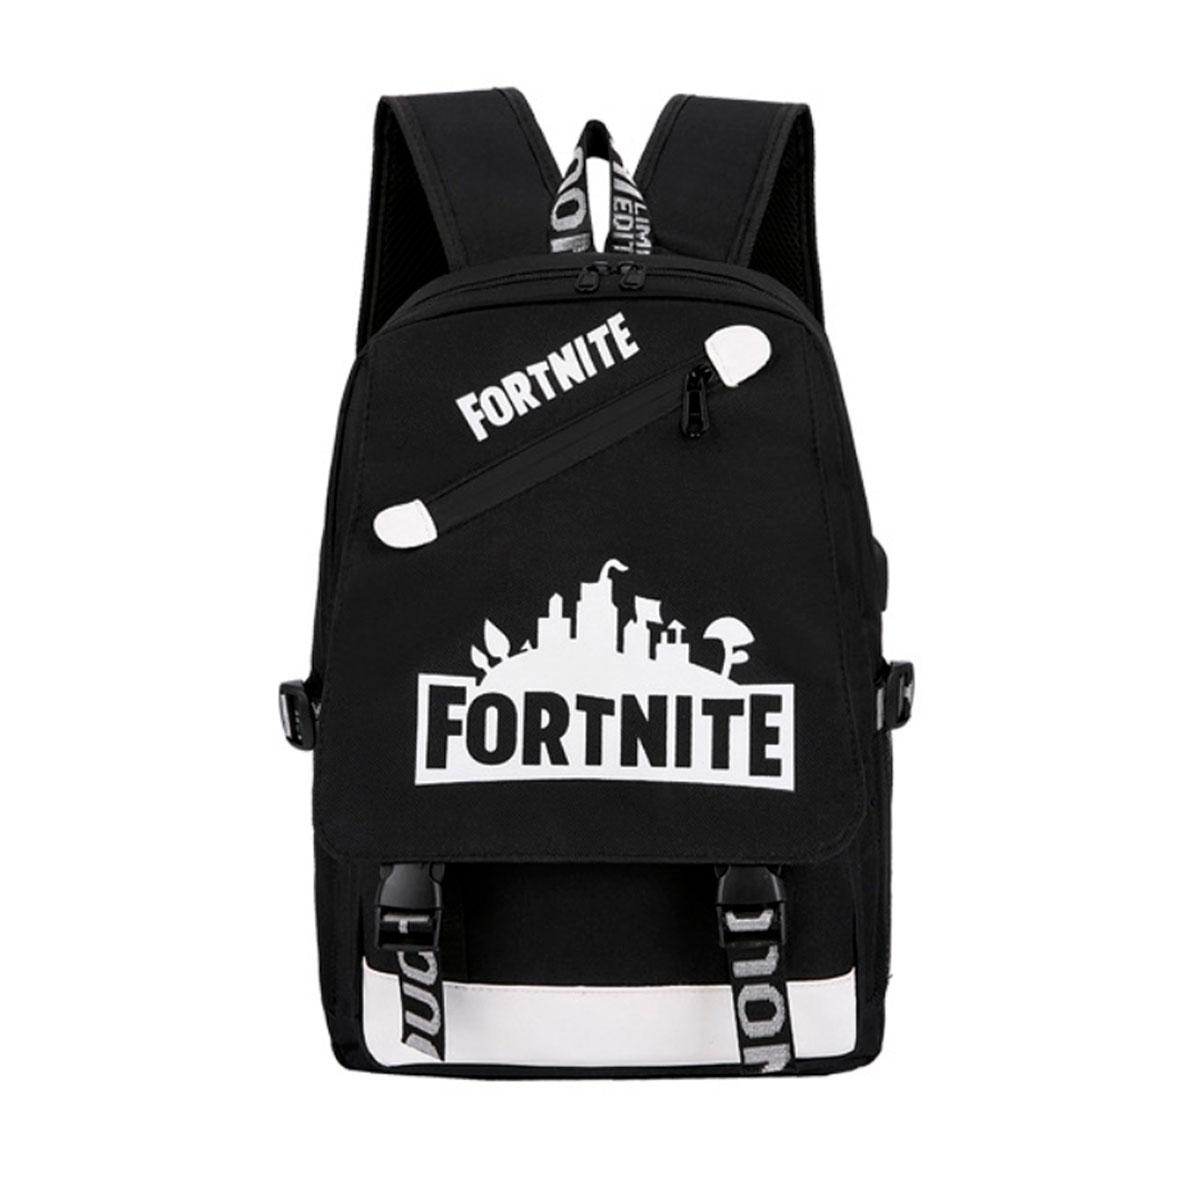 Рюкзак шкільний для підлітка Backpack Fortnite рюкзак міський чорний фортнайт для підлітка (ST)